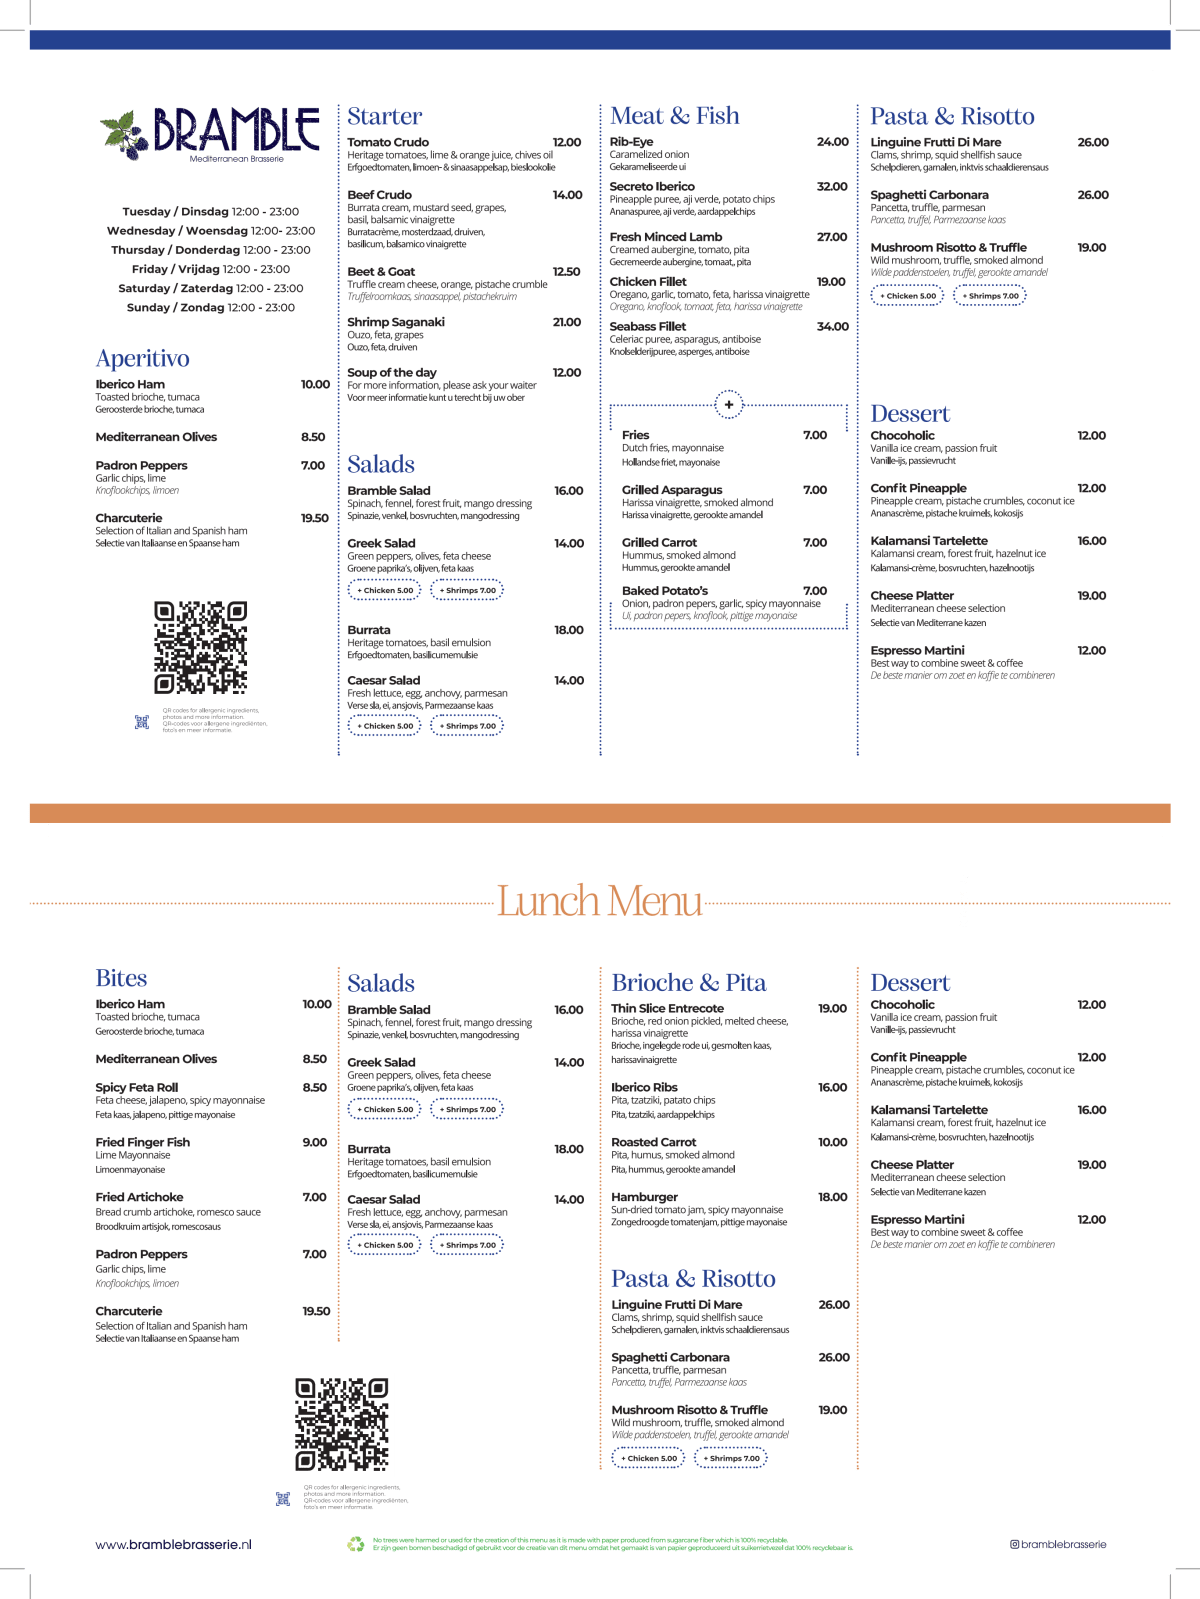 Bramble Mediterranean Brasserie menu